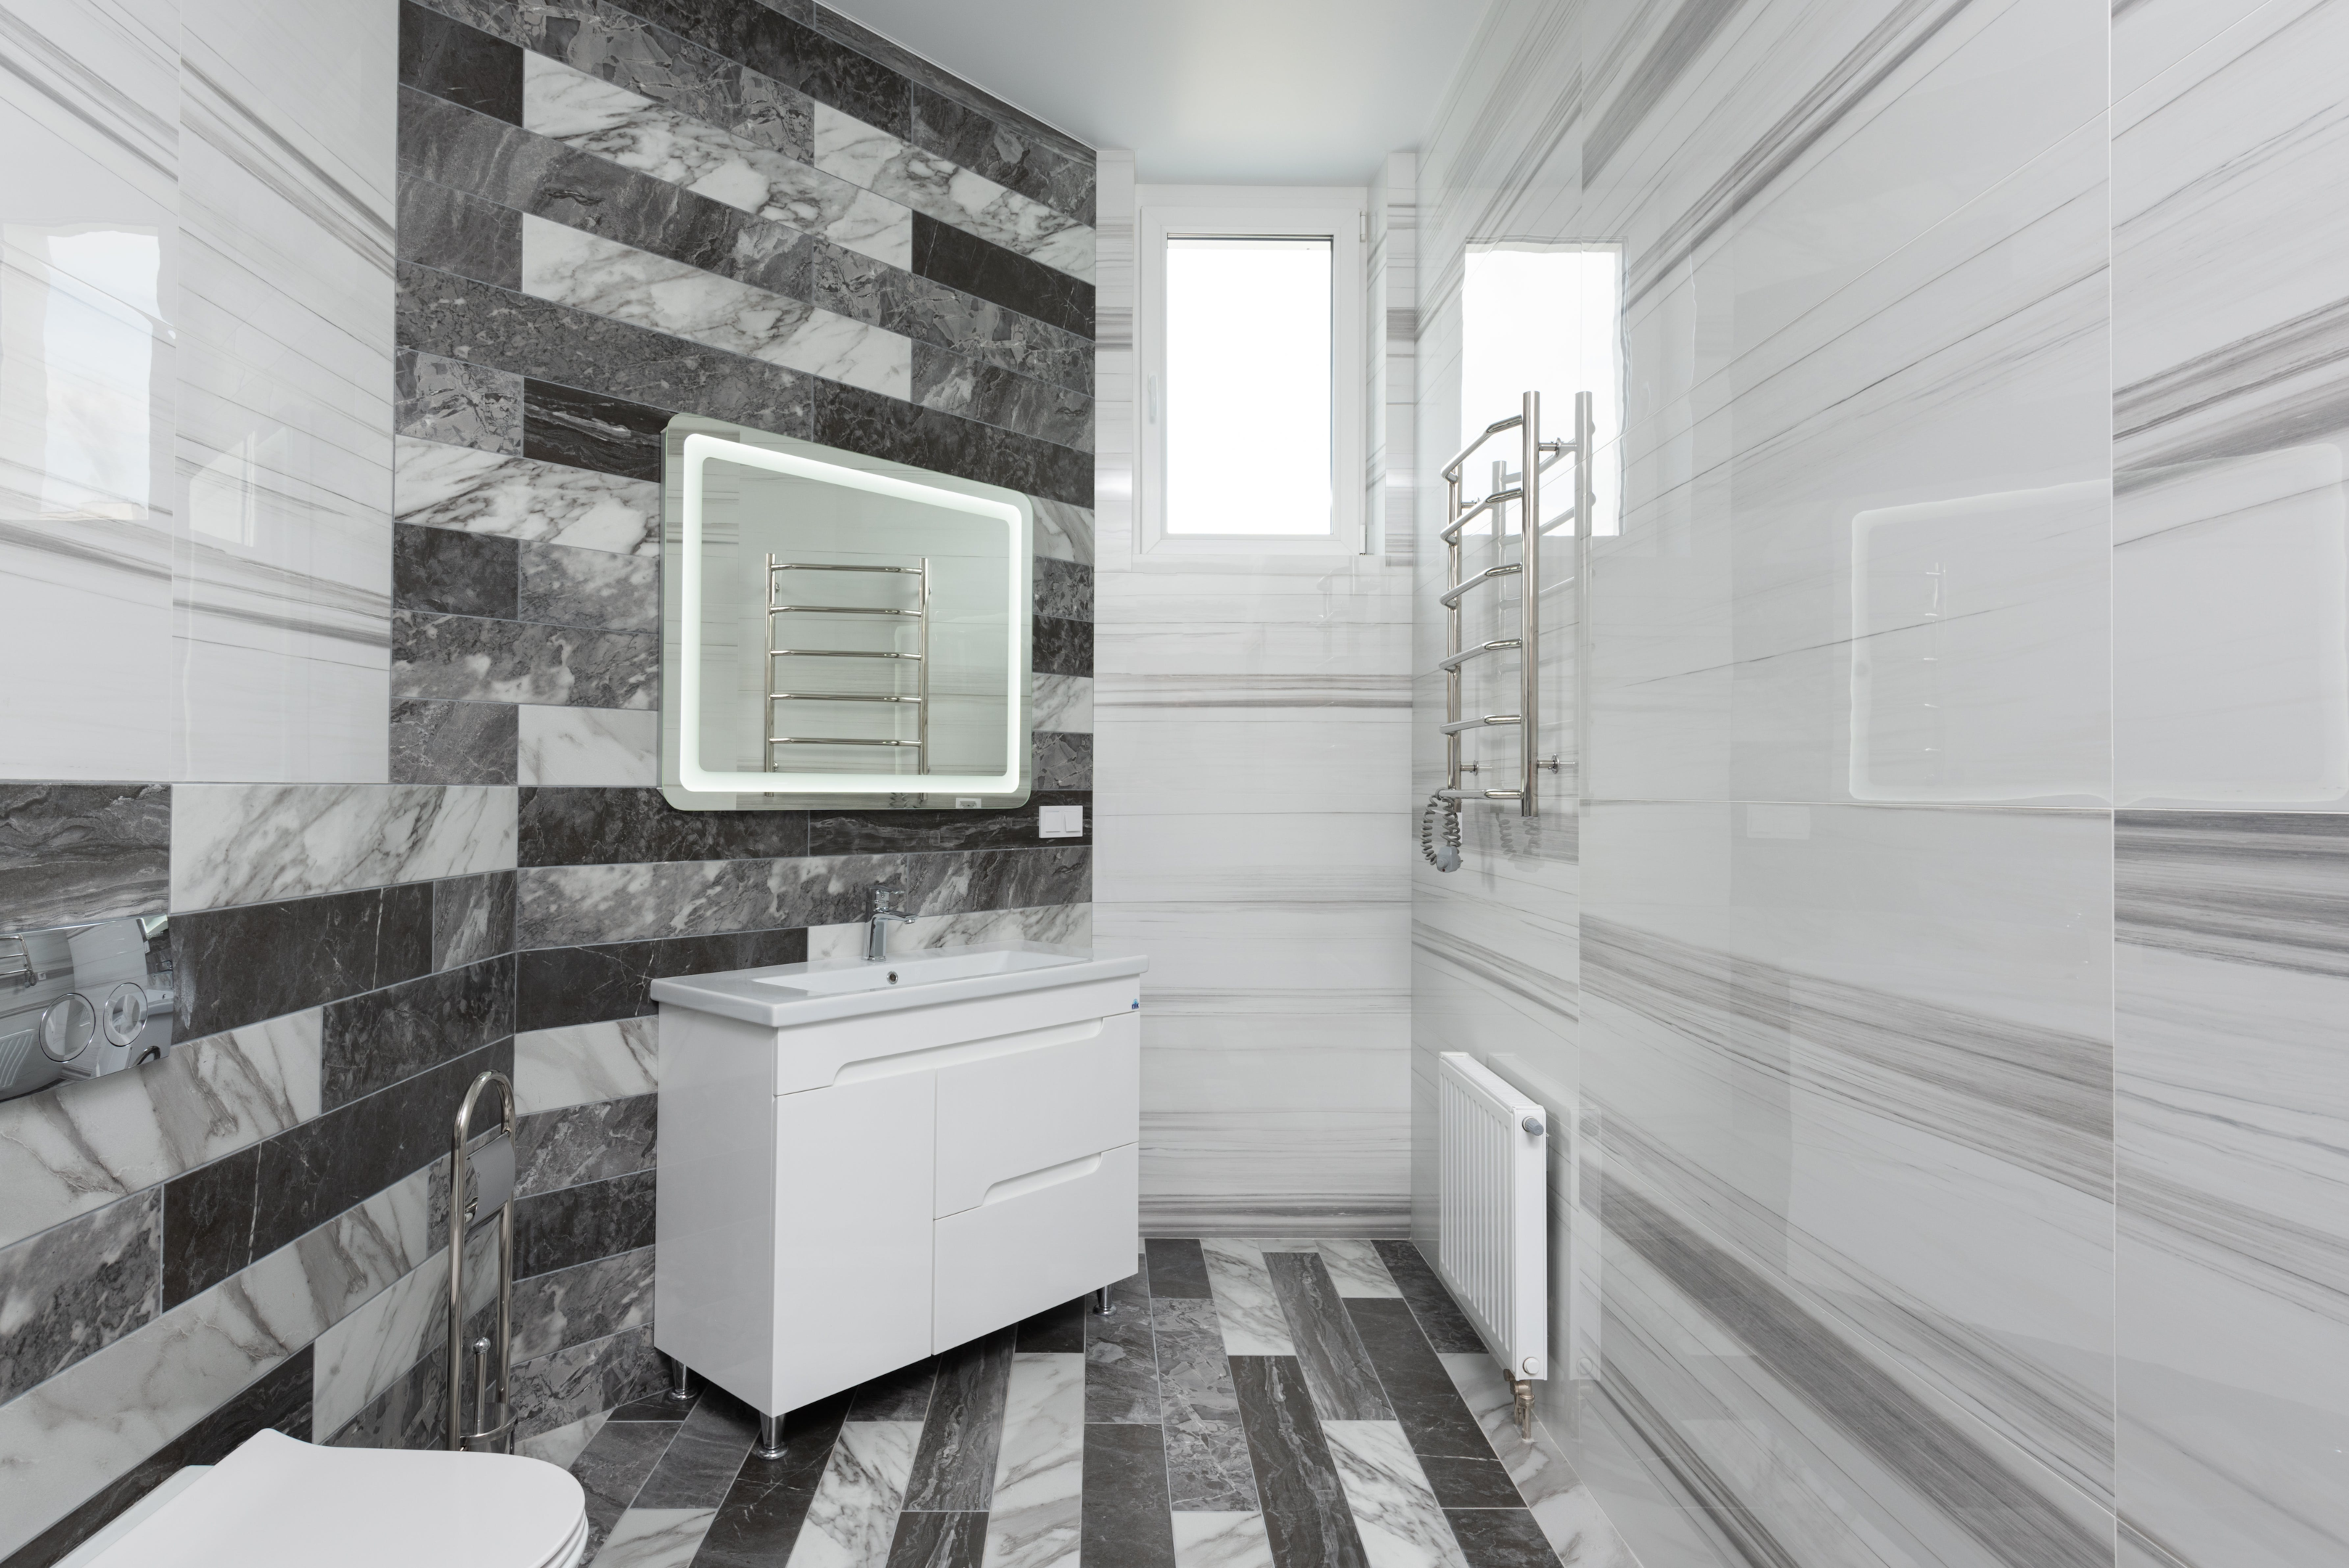 For the best bathroom tile ideas, visit EMC Tiles.